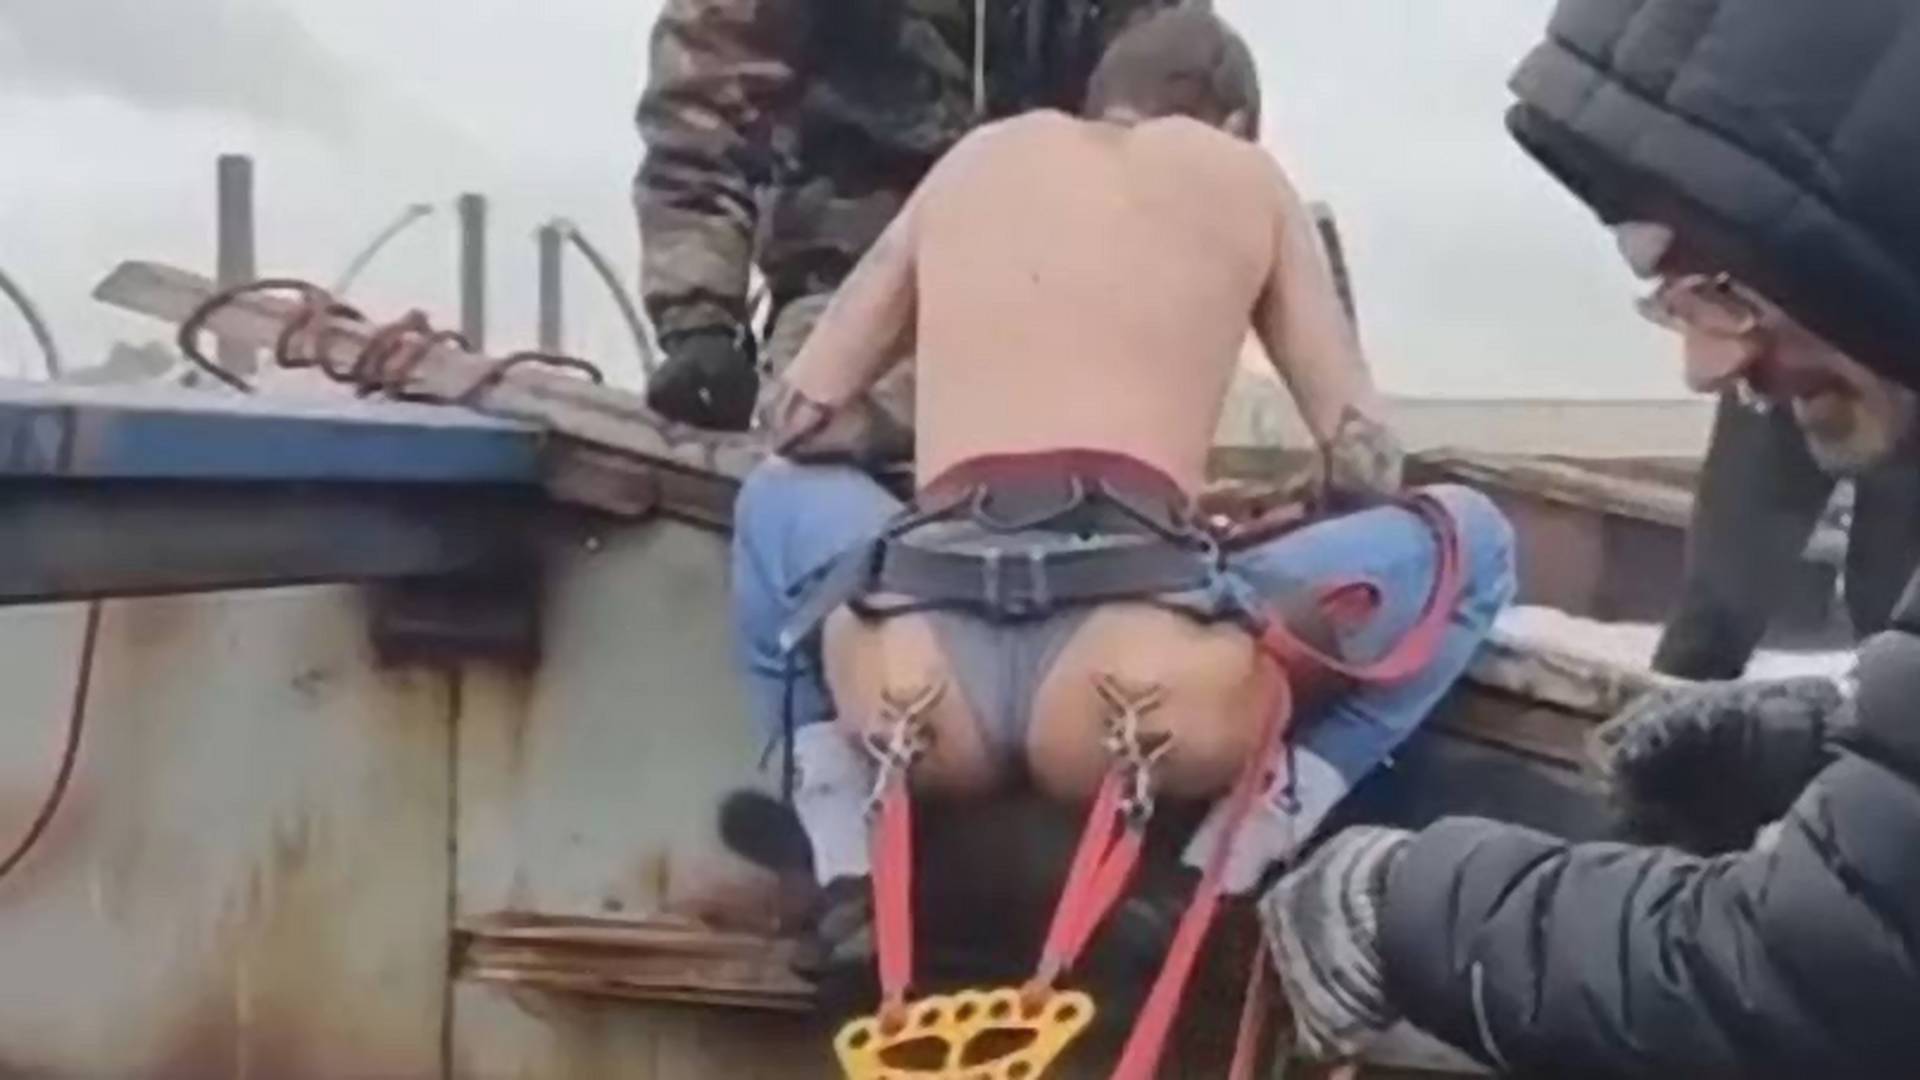 Fenékpiercingekre erősített kötéllel  bungee jumpingozott egy orosz férfi - Videó